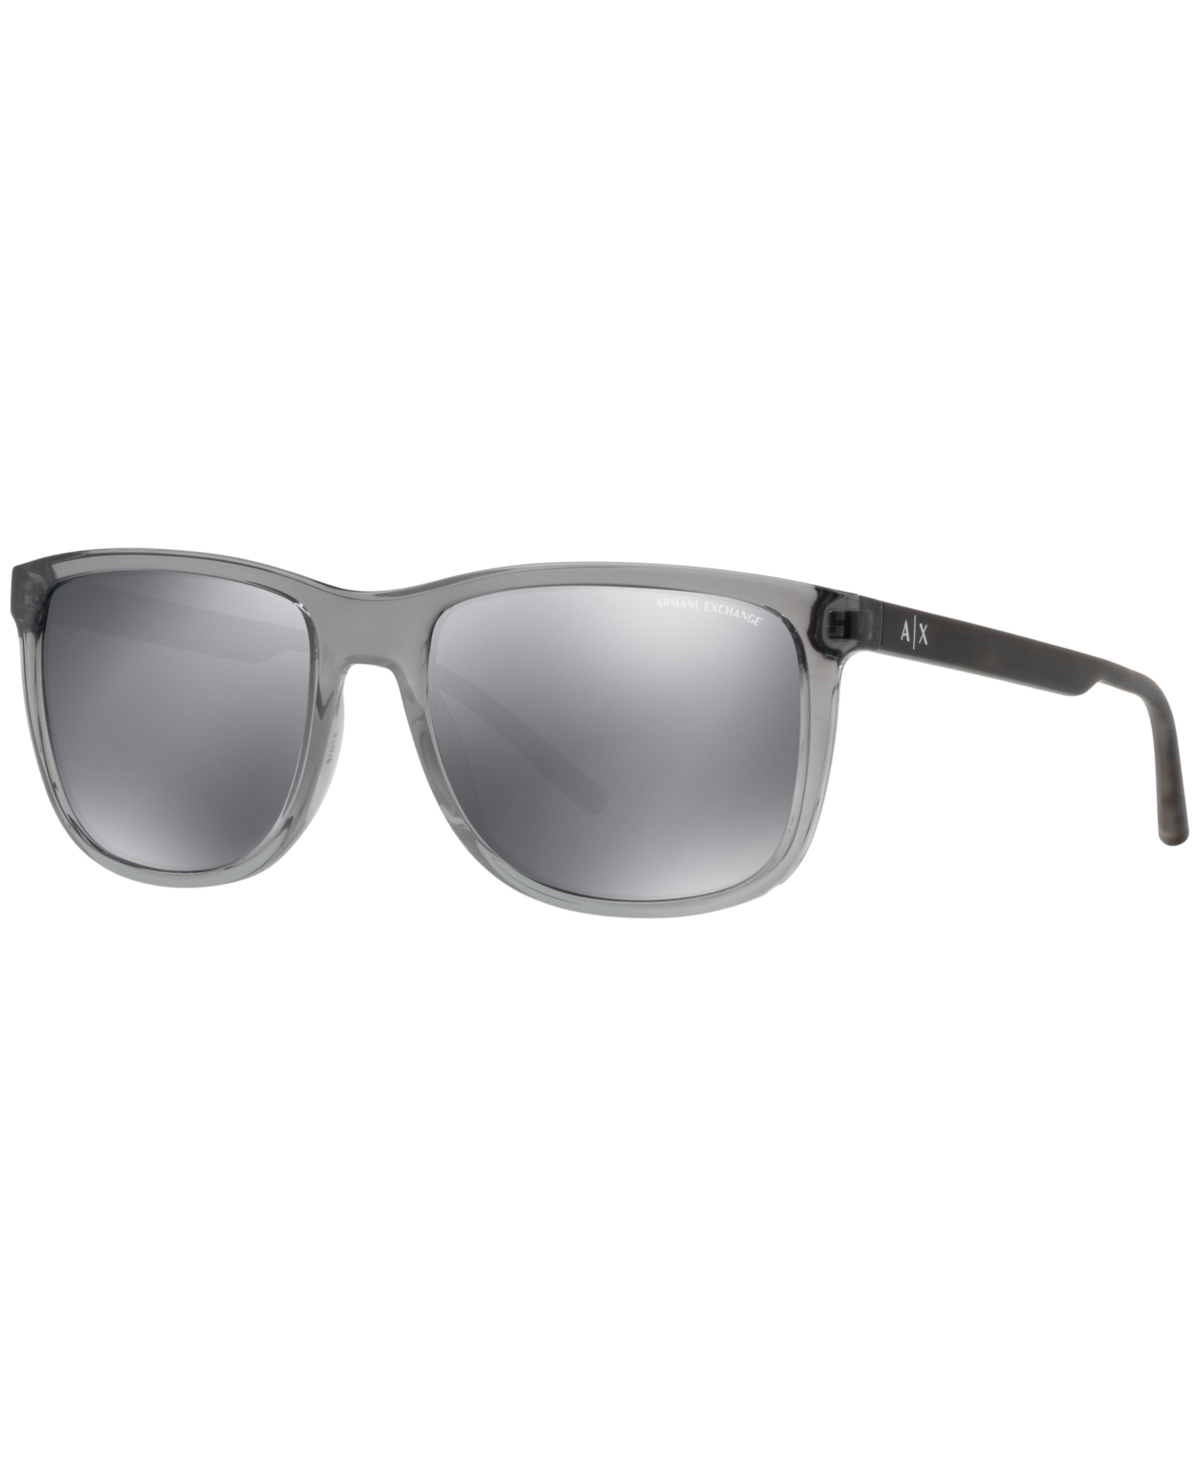 Ax Armani Exchange A|x Sunglasses, Ax4070s In Gray